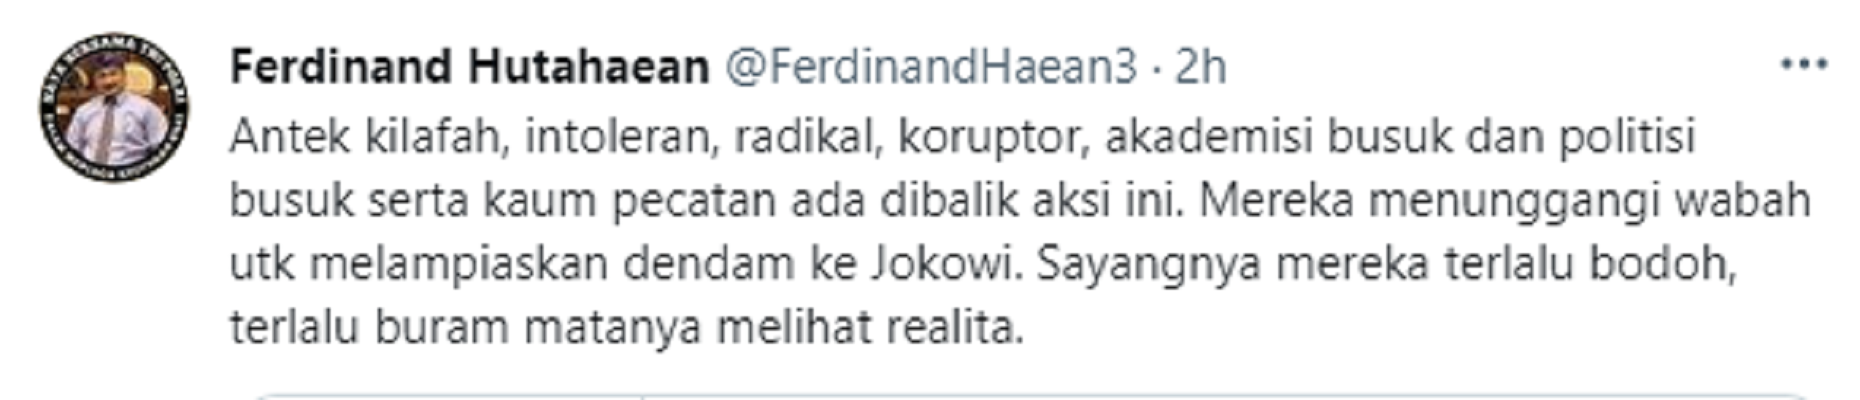 Cuitan Ferdinan Hutahaean menanggapi maraknya ajakan aksi Jokowi End Game.